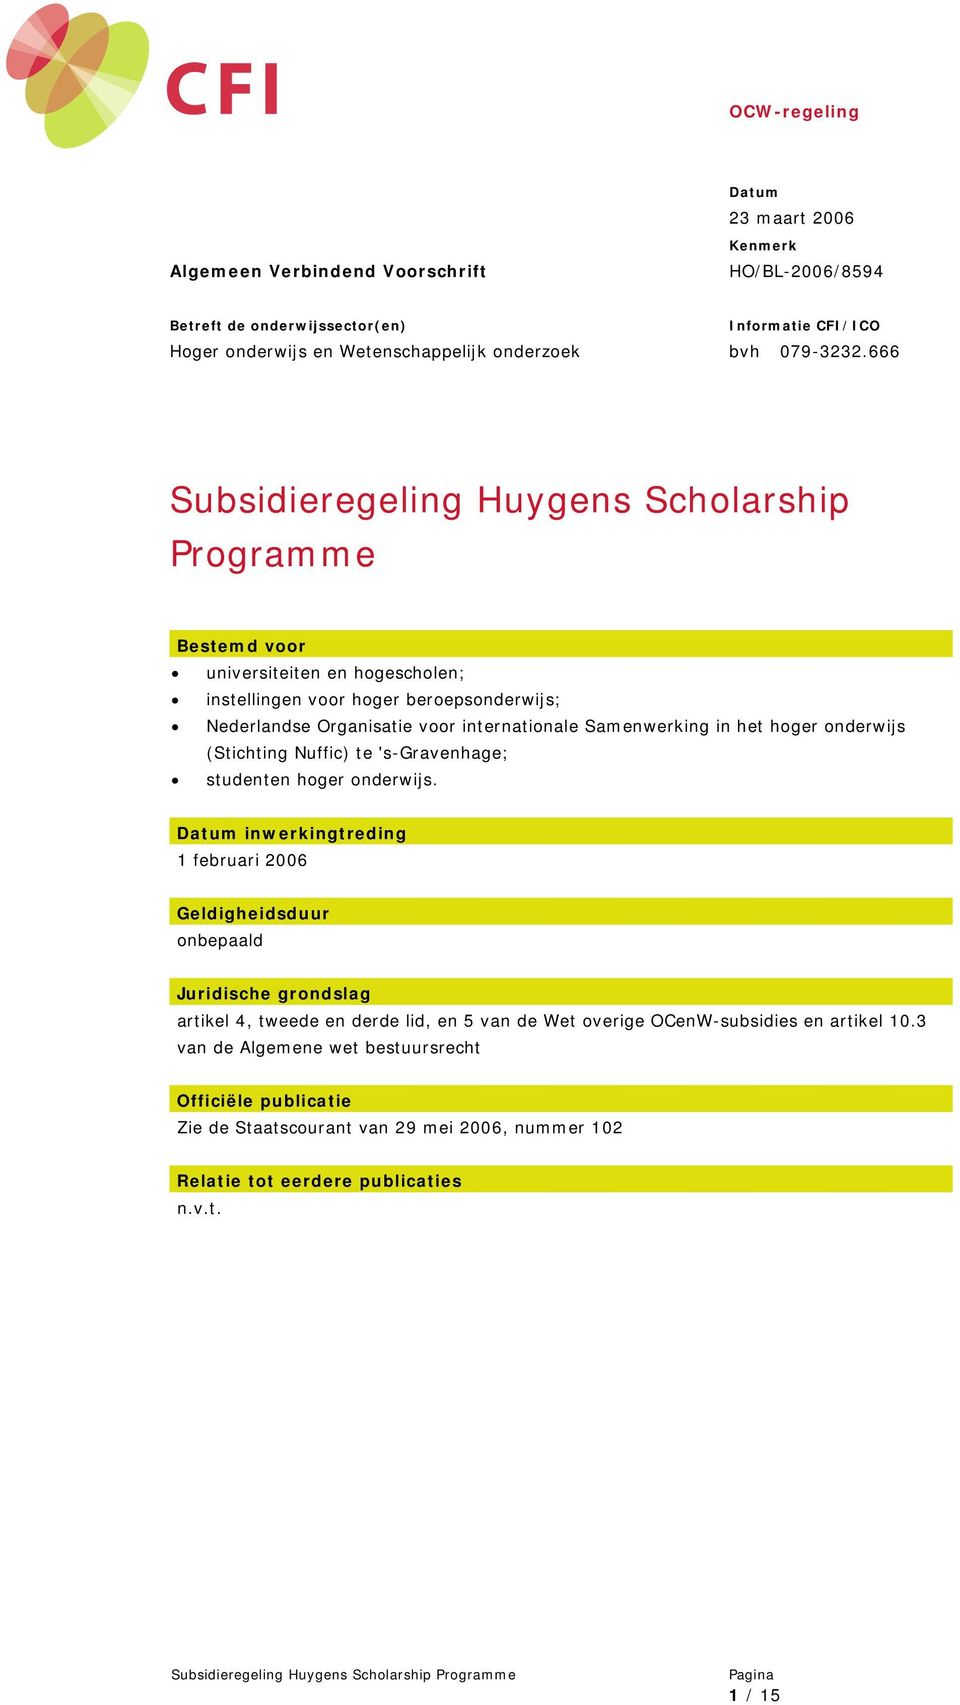 Samenwerking in het hoger onderwijs (Stichting Nuffic) te 's-gravenhage; studenten hoger onderwijs.